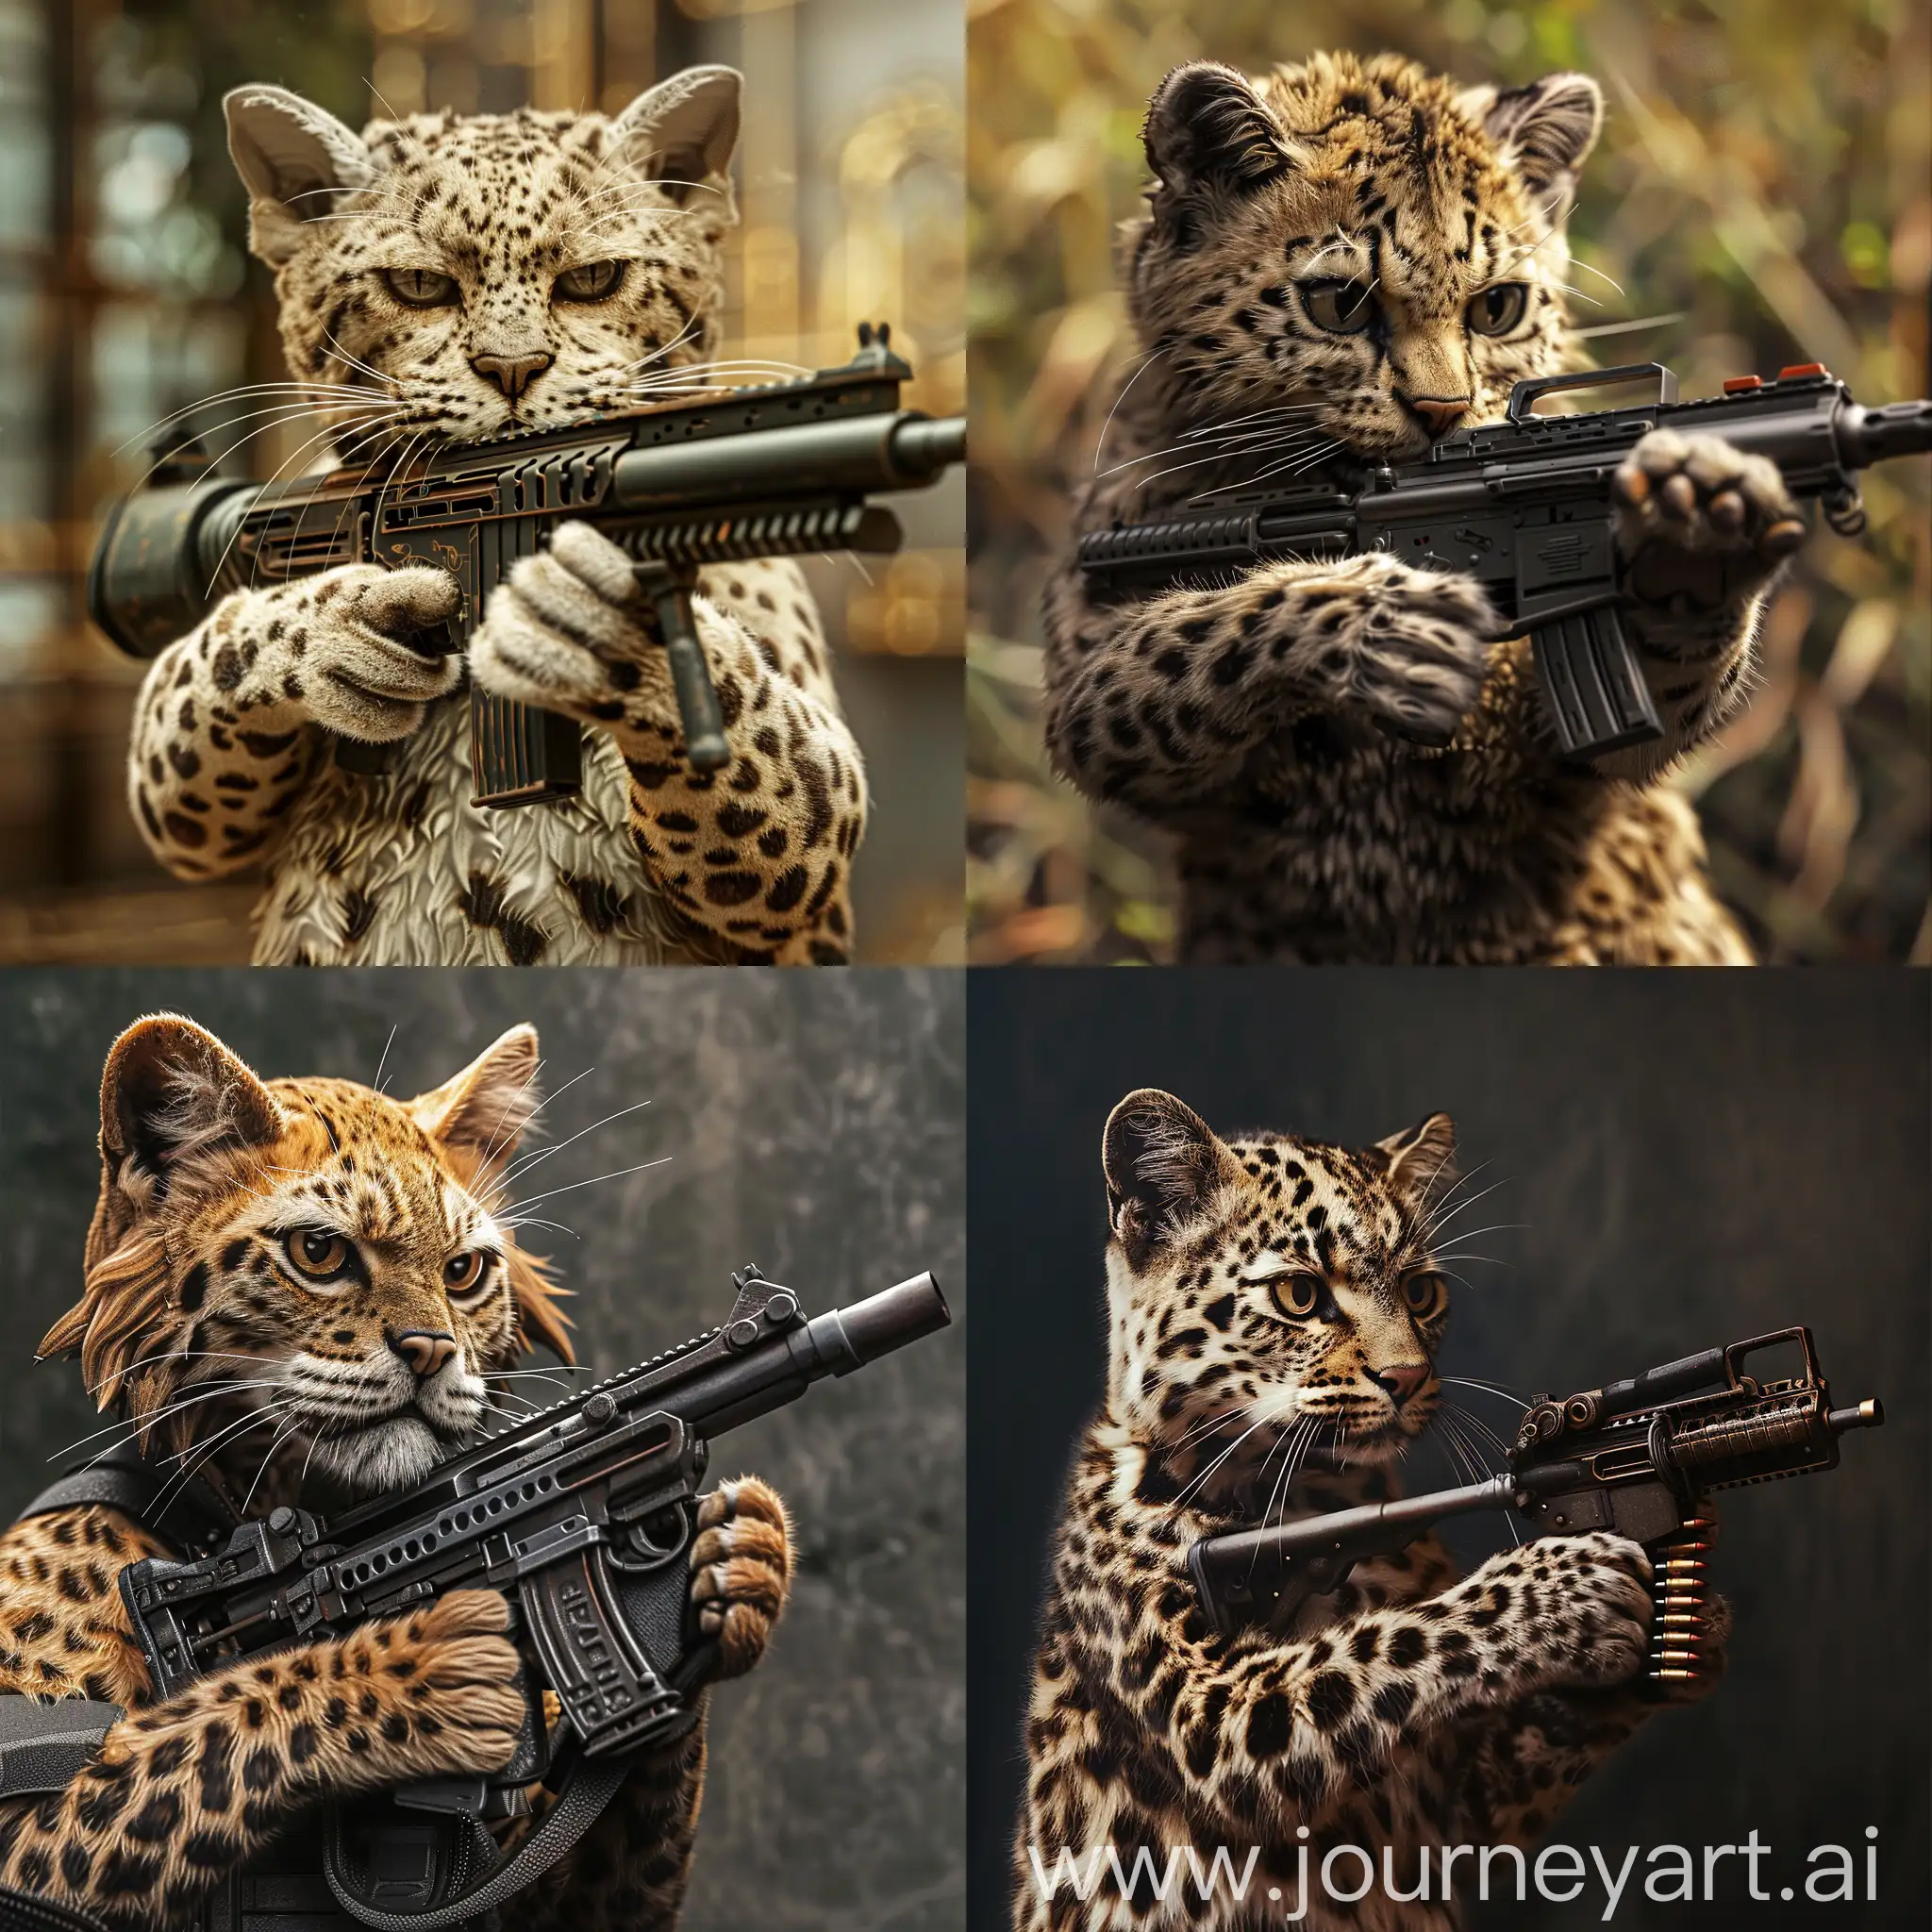 Leopard-Cat-with-Gepard-Submachine-Gun-Realistic-Wildlife-Art